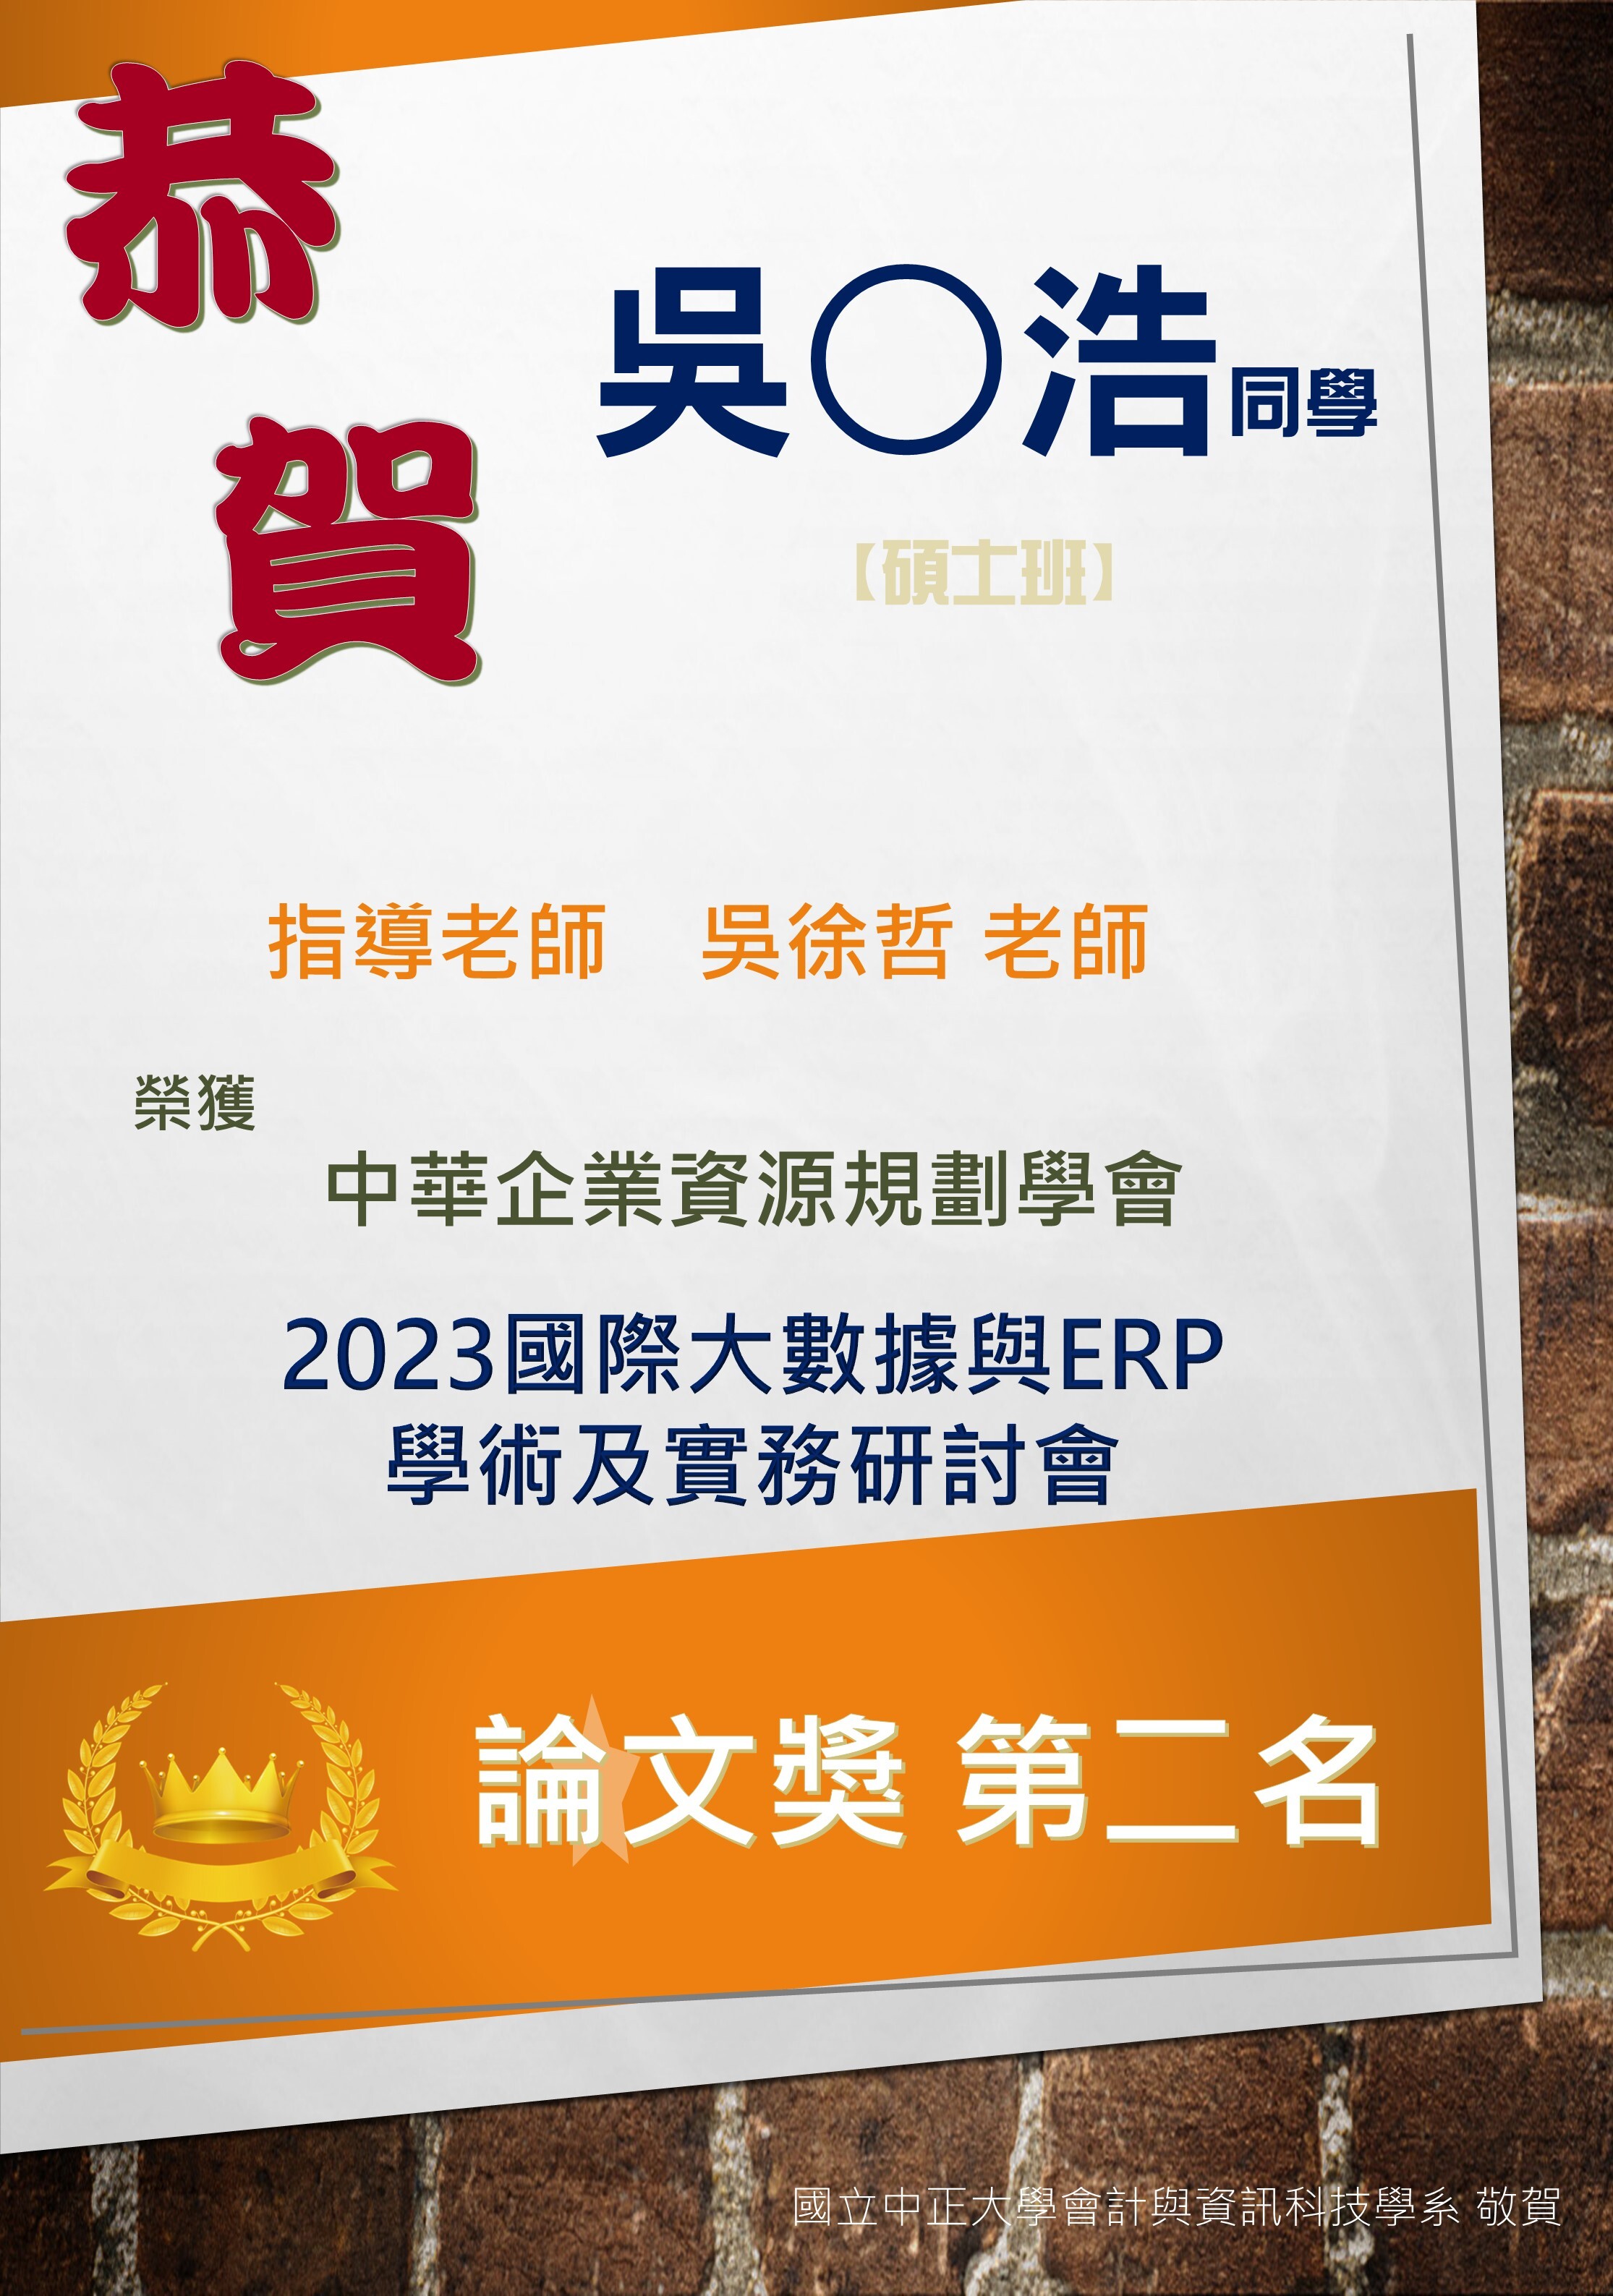 2023國際大數據ERP論文獎